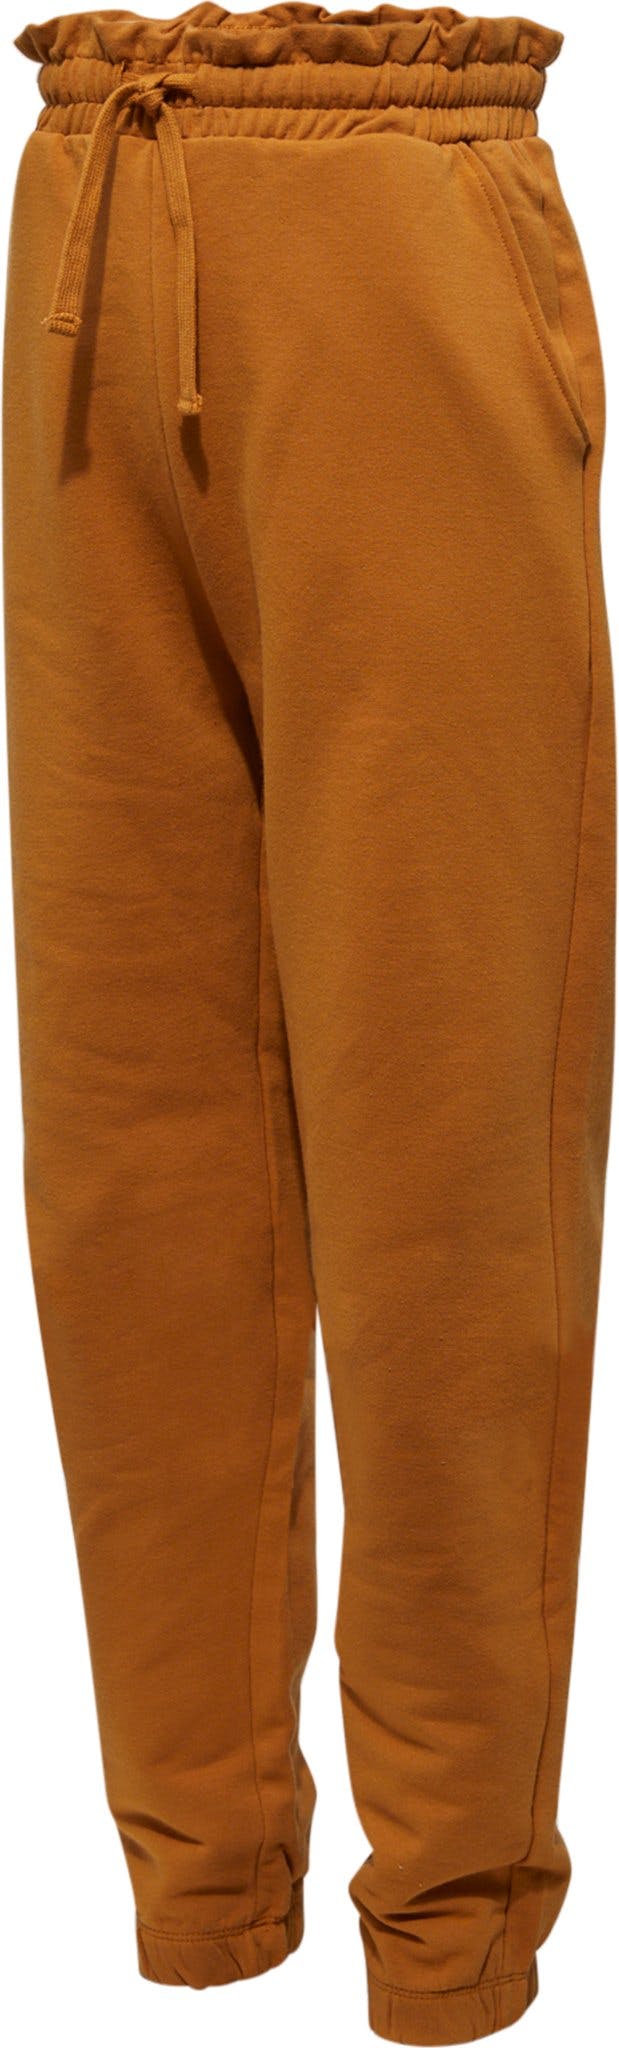 Numéro de l'image de la galerie de produits 2 pour le produit Pantalon en tricot - Fille